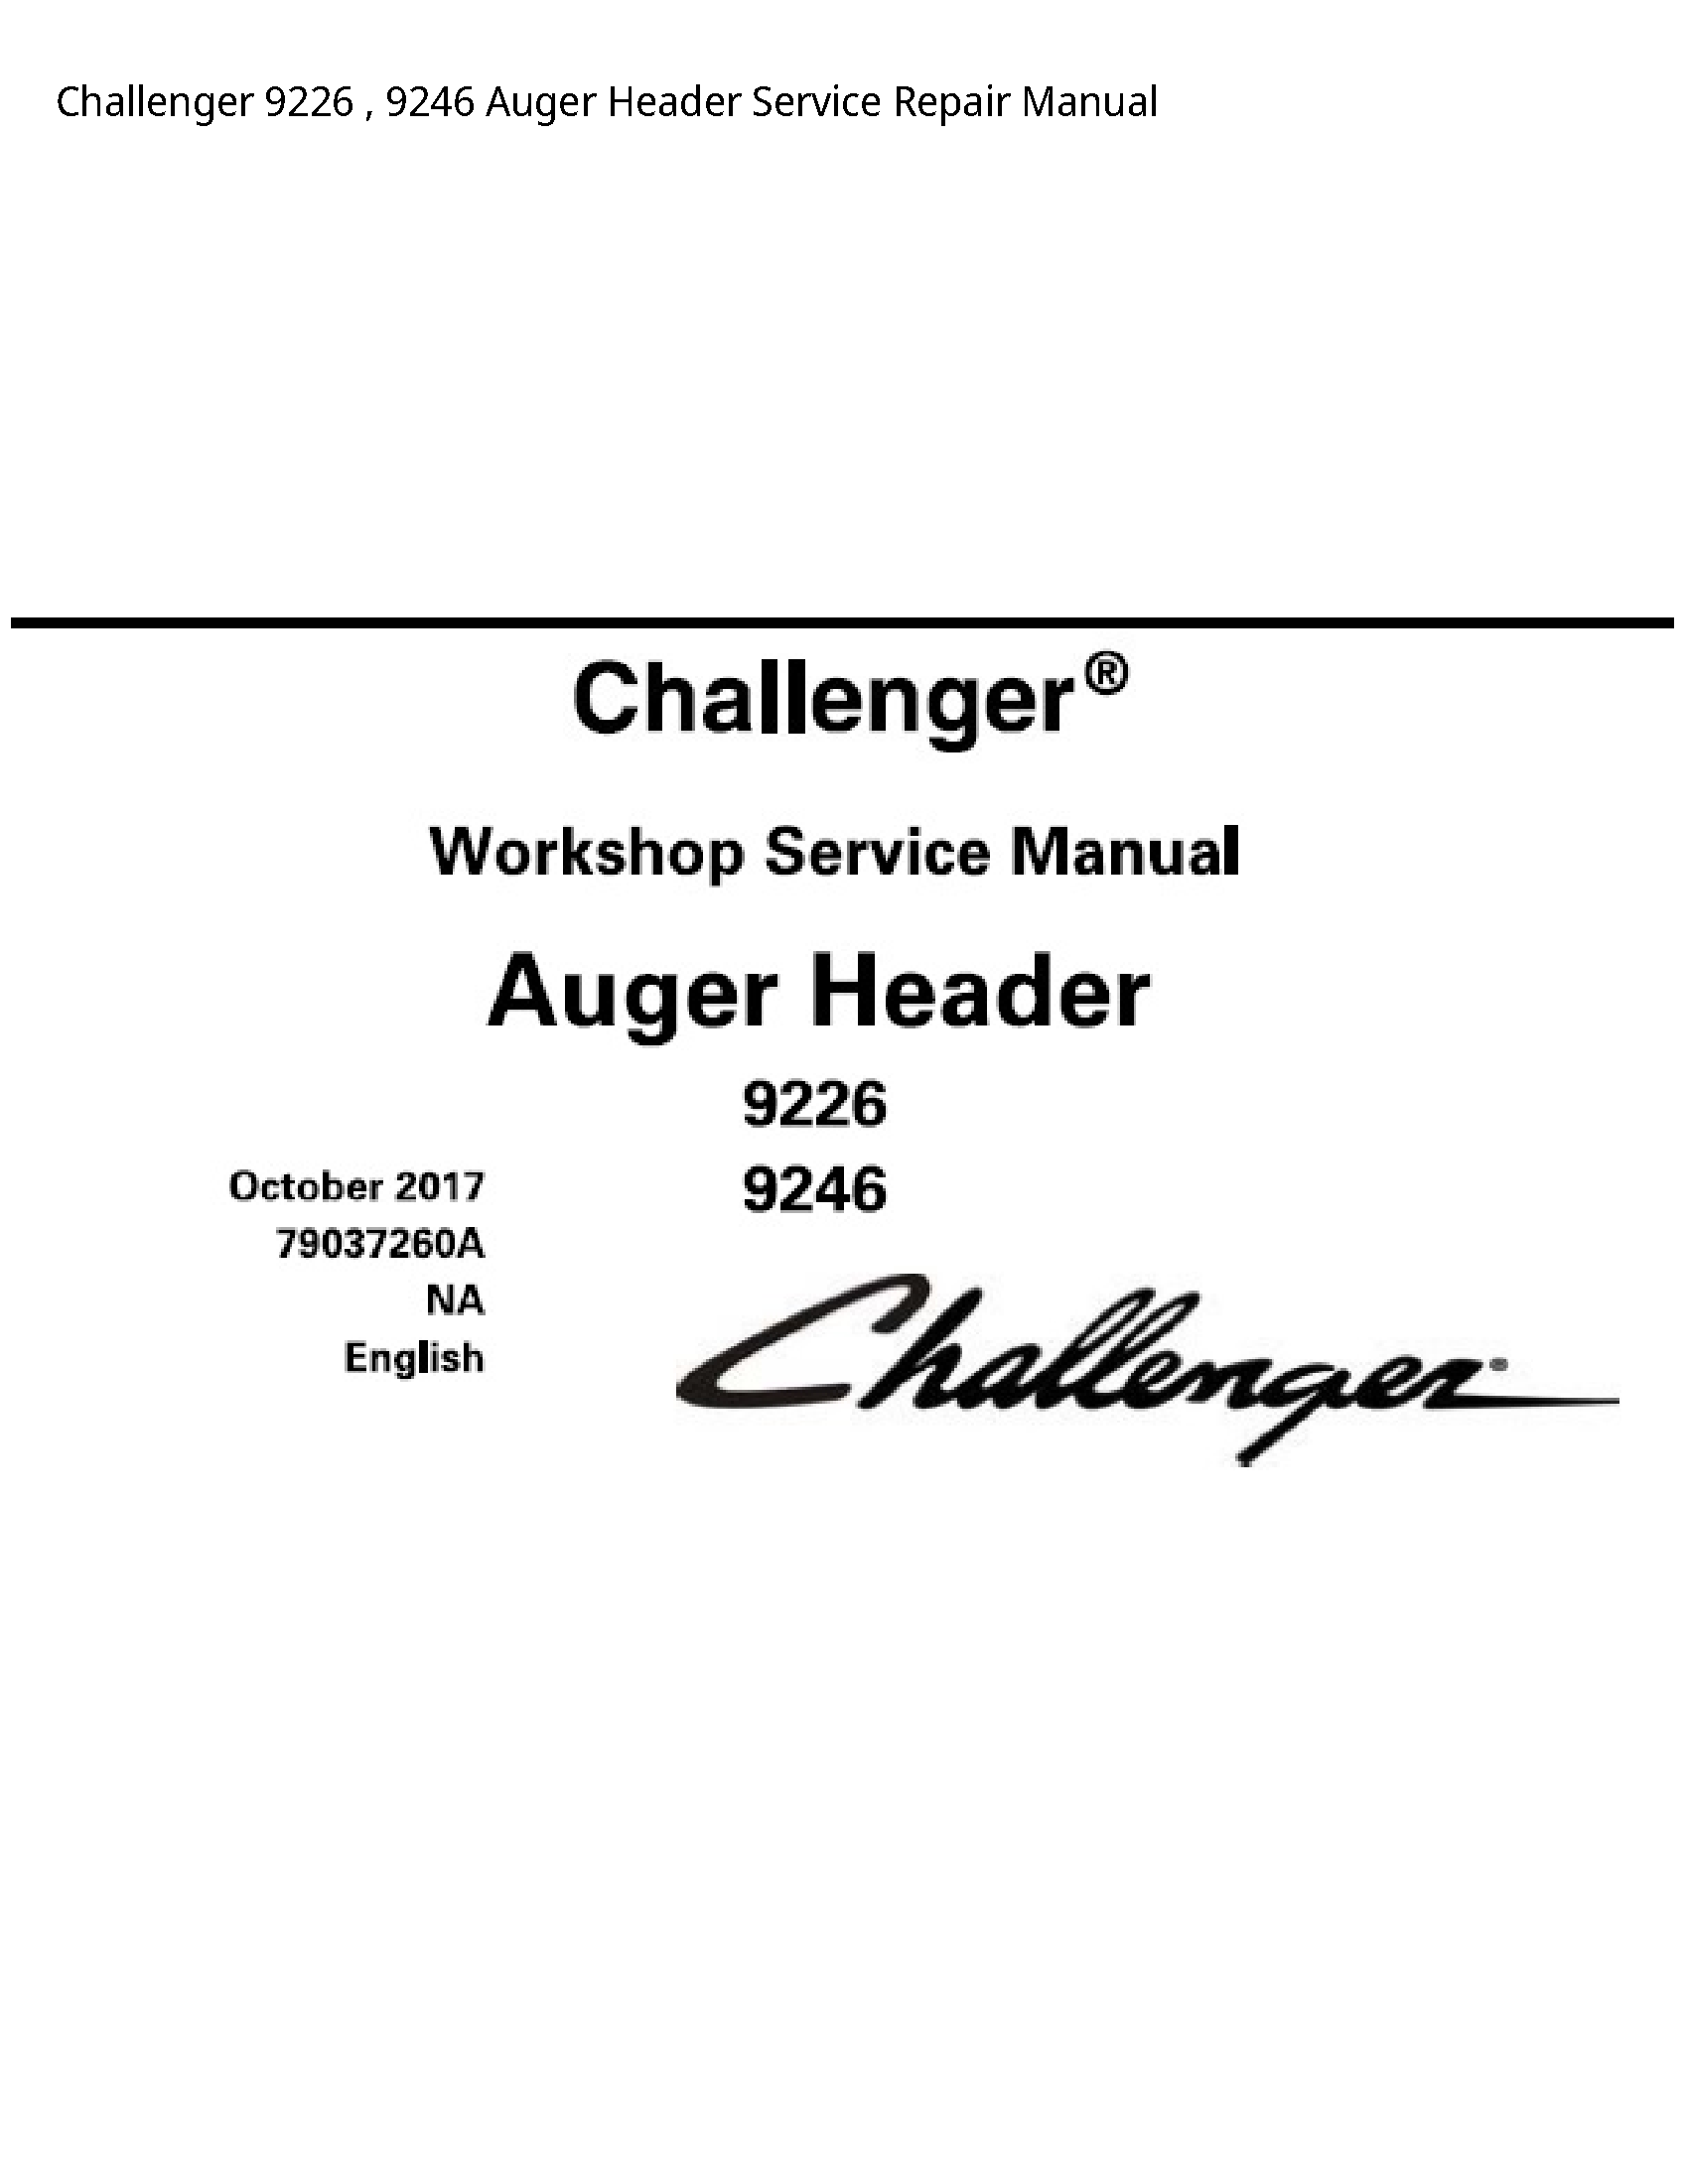 Challenger 9226 Auger Header manual